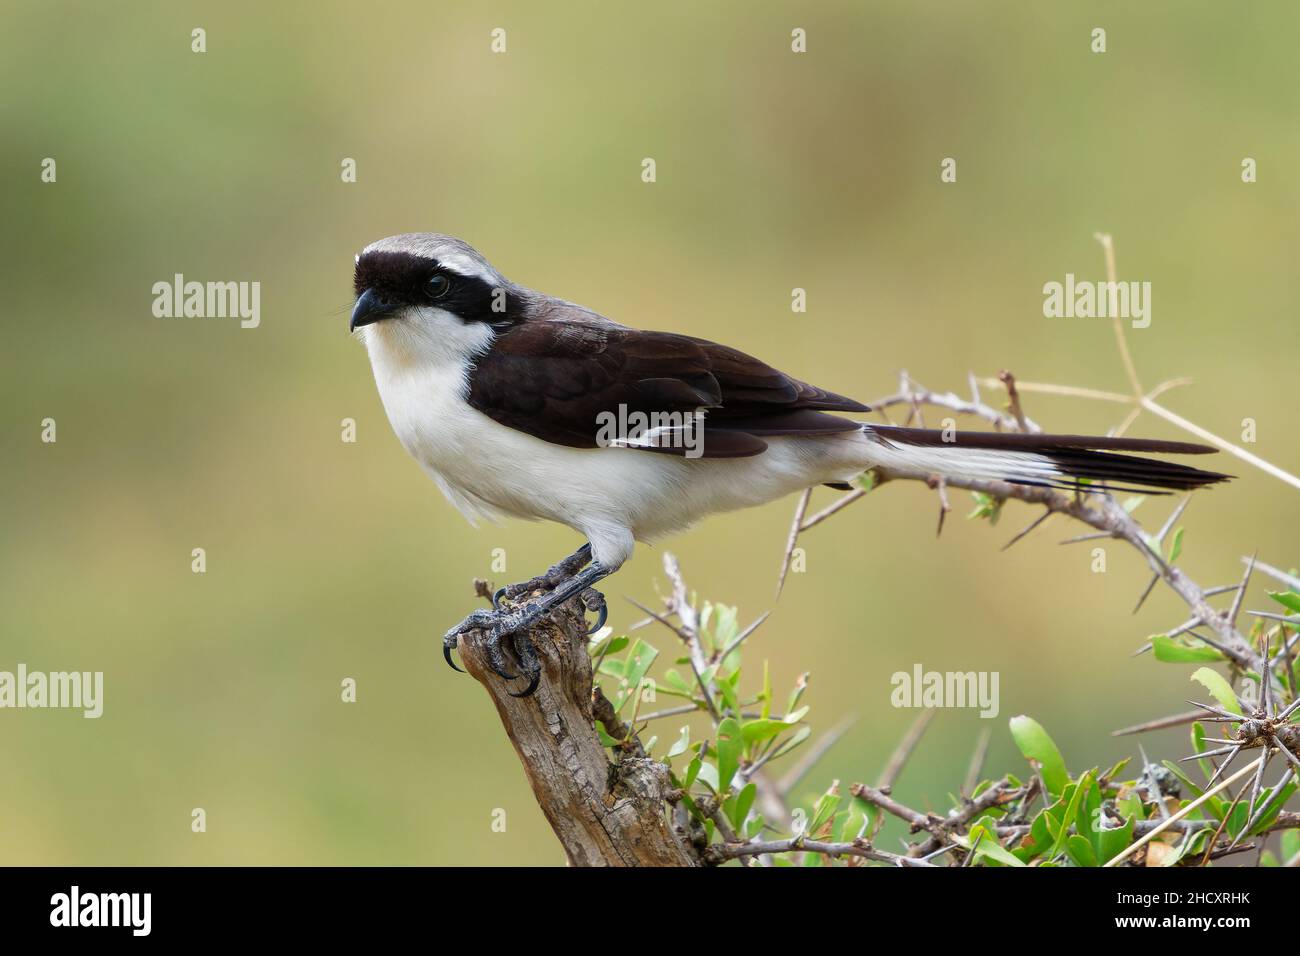 Graurückenvögel - Lanius excubitoroides schwarz-weiß und grauer Vogel in Laniidae, die in Afrika zu finden sind, sind ihre natürlichen Lebensräume trockene Savanne und Subtro Stockfoto